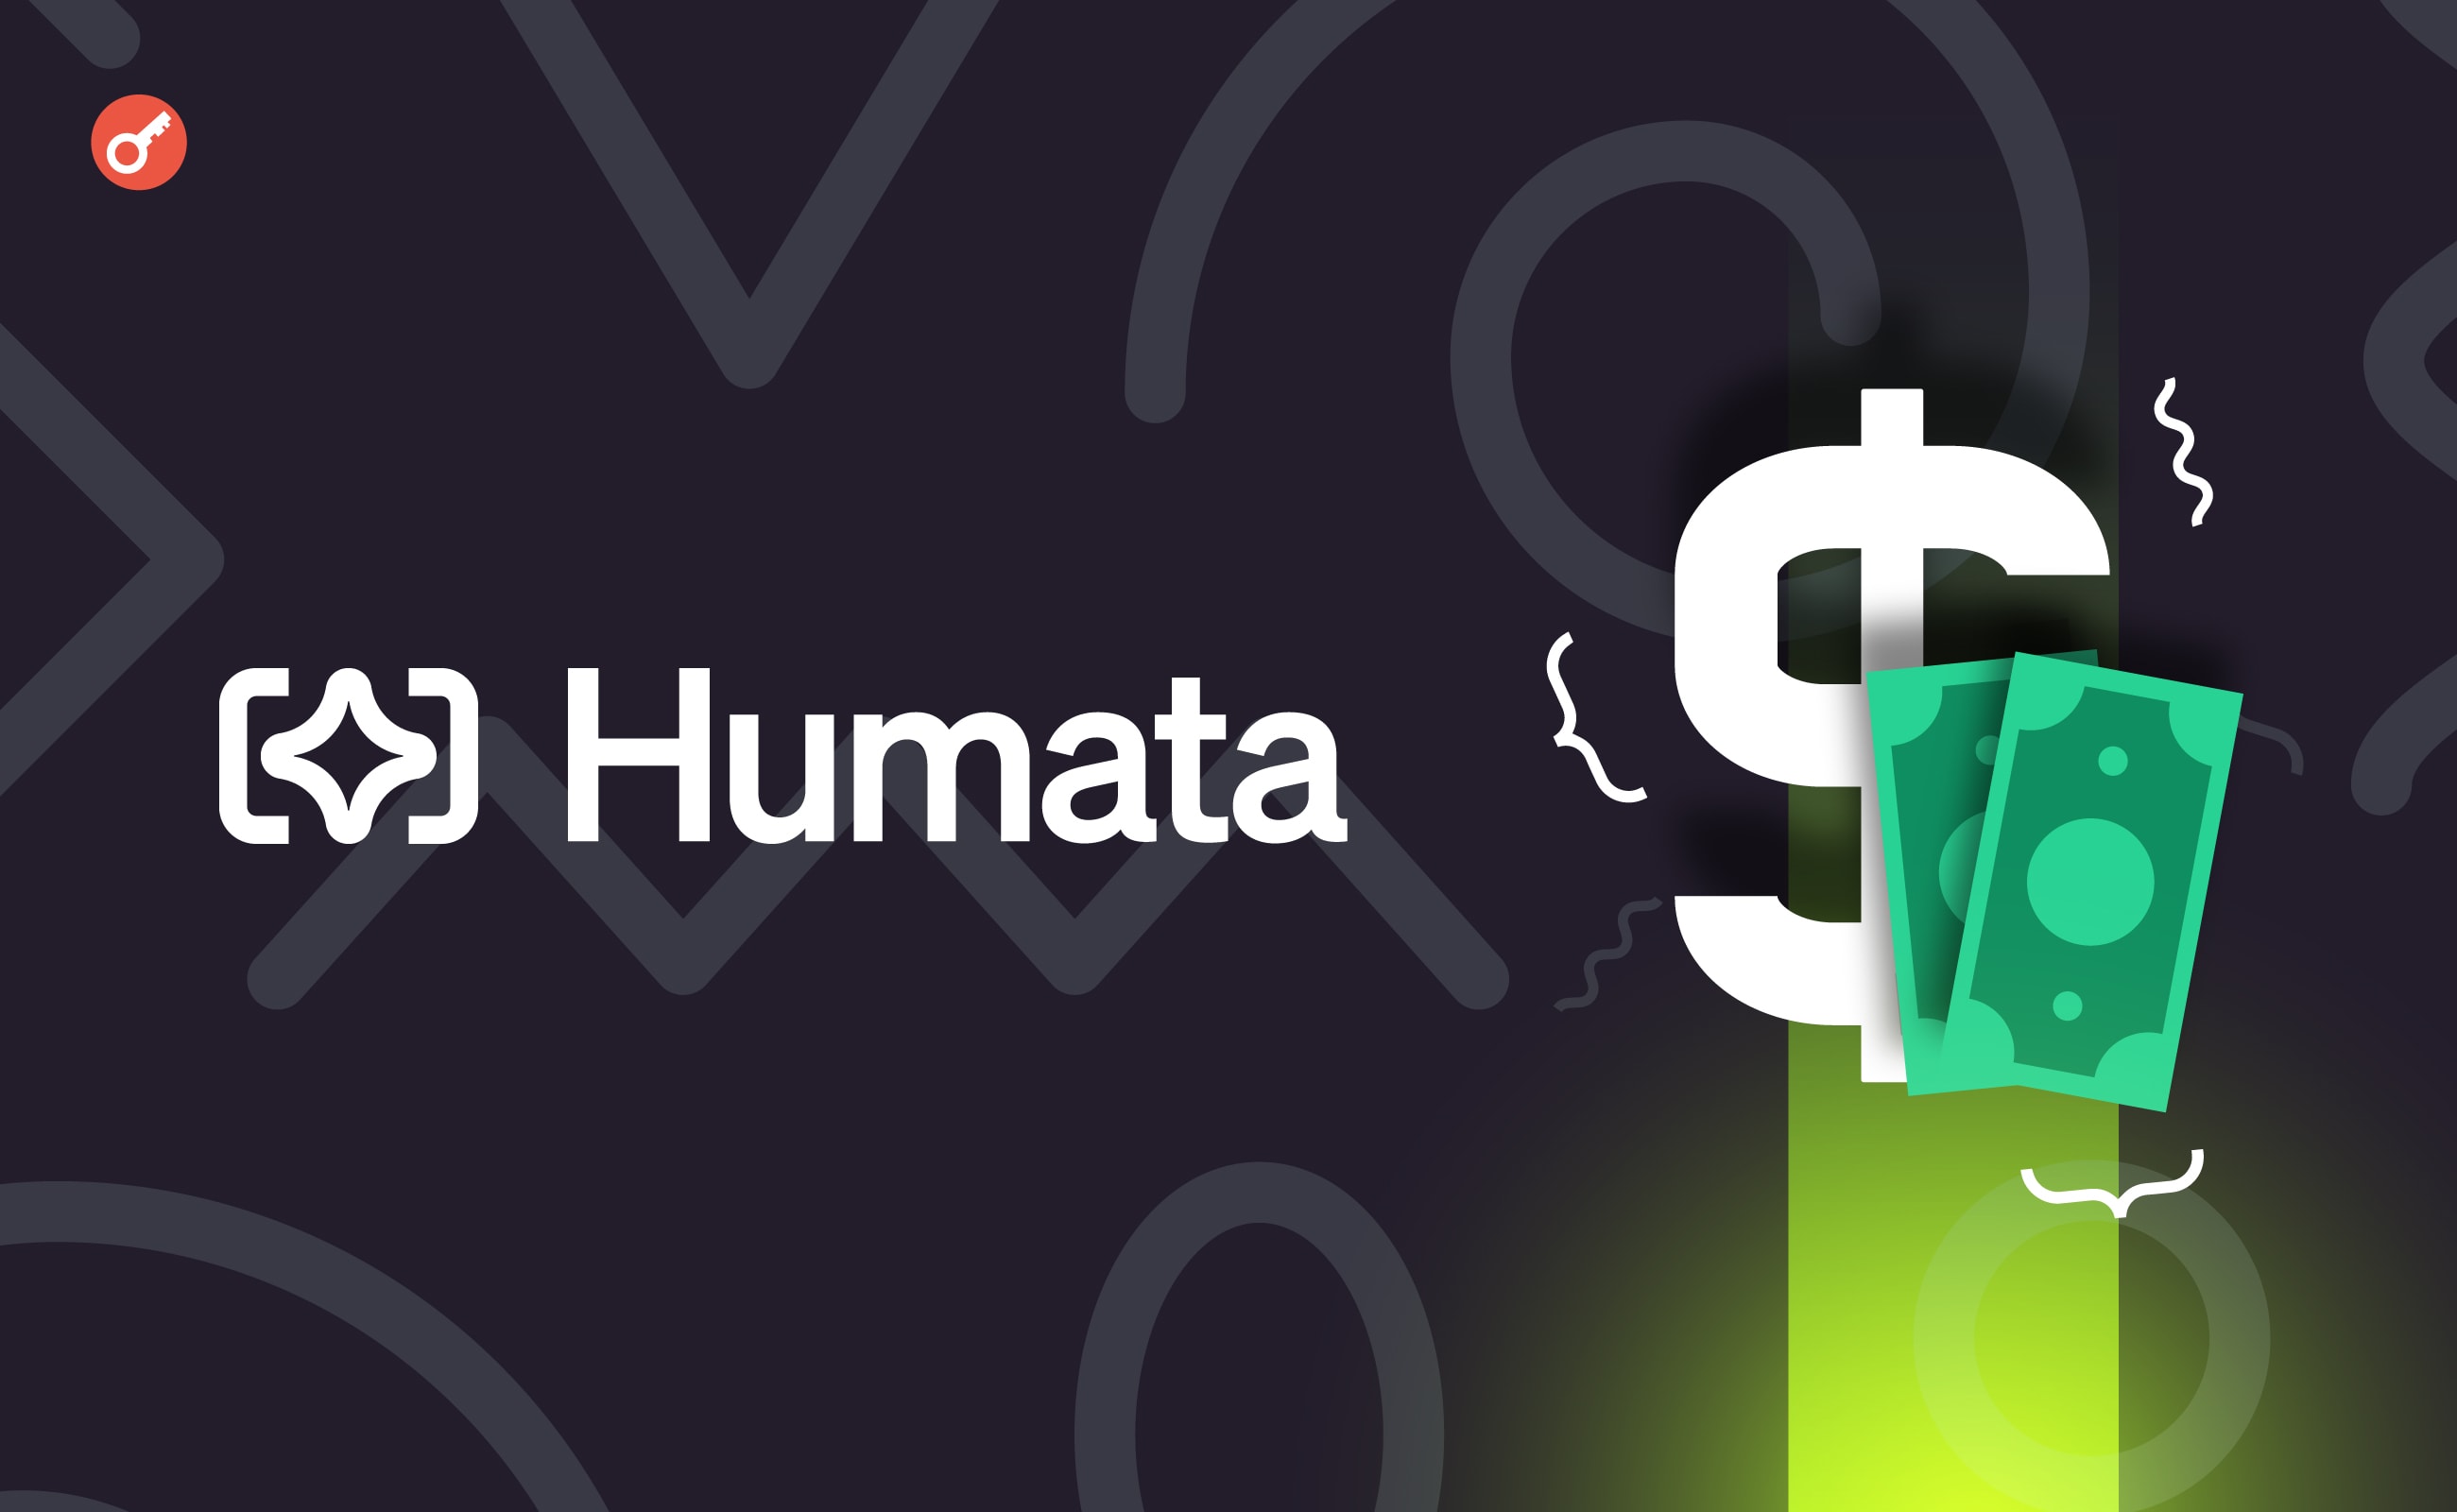 Humata AI залучила $3,5 млн інвестицій. Головний колаж новини.